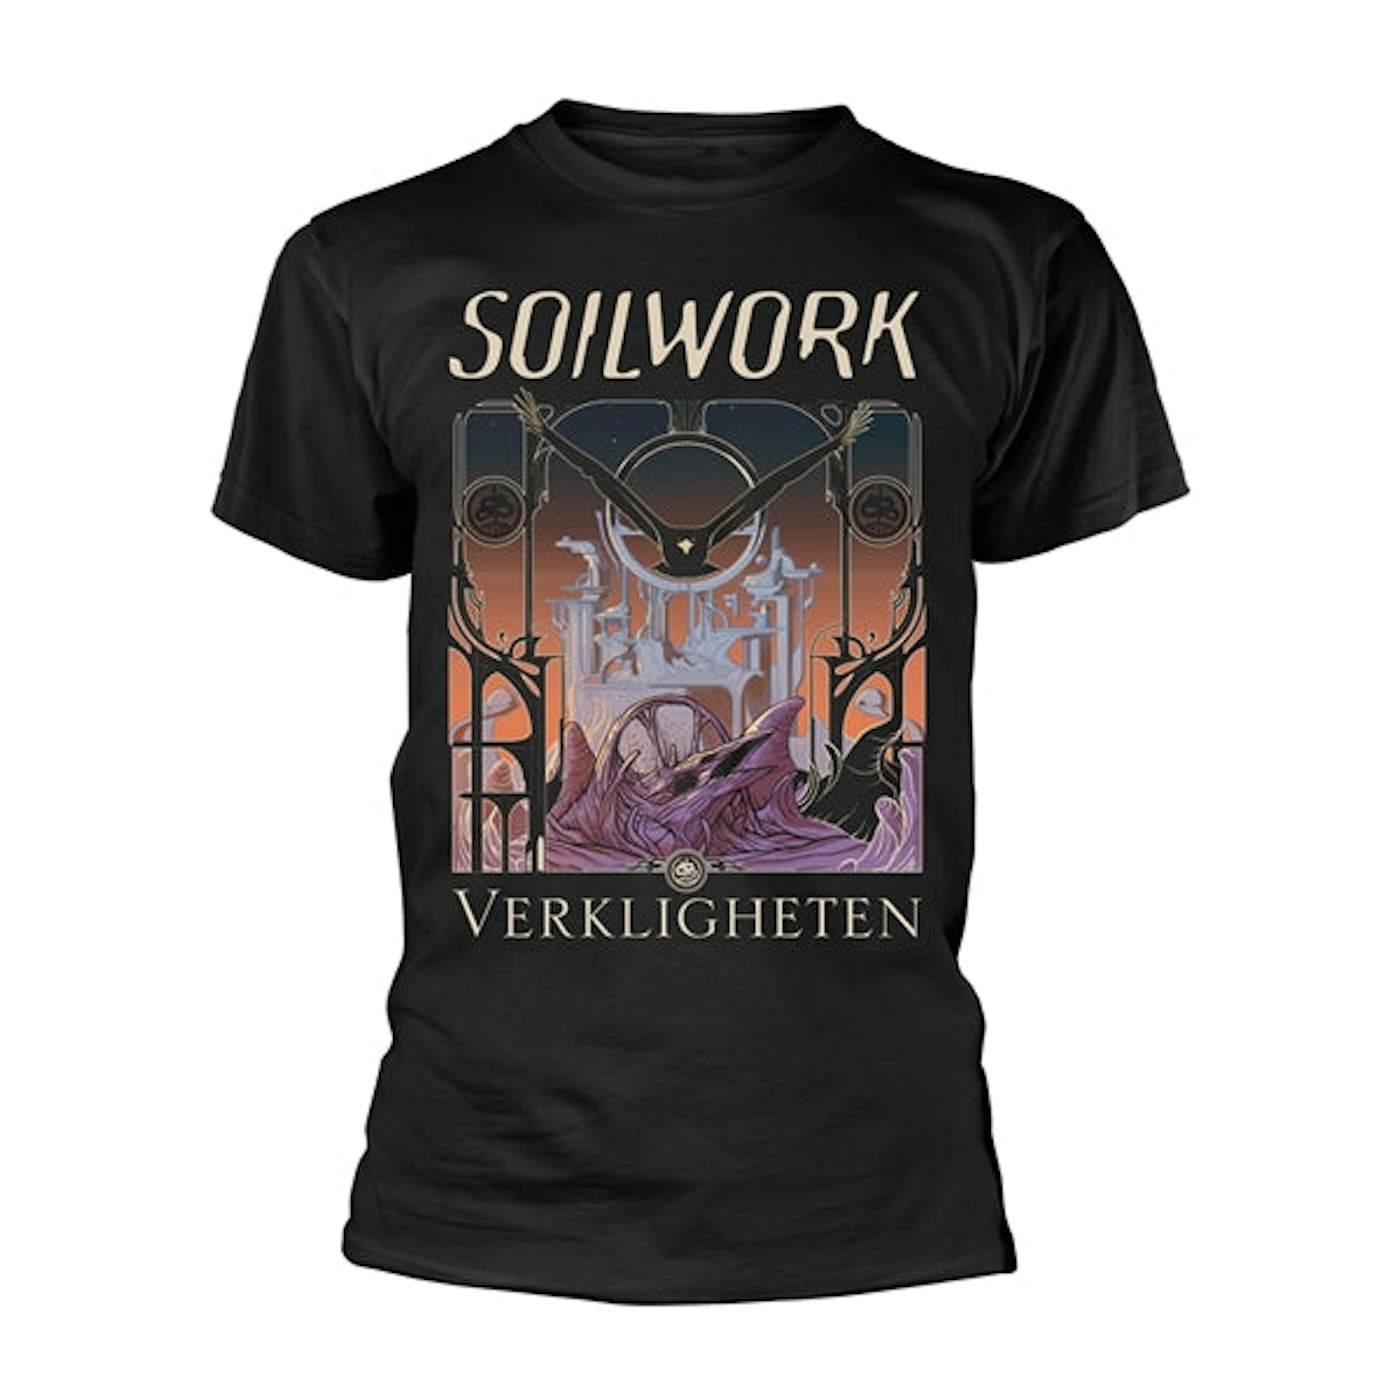 Soilwork T-Shirt - Verkligheten